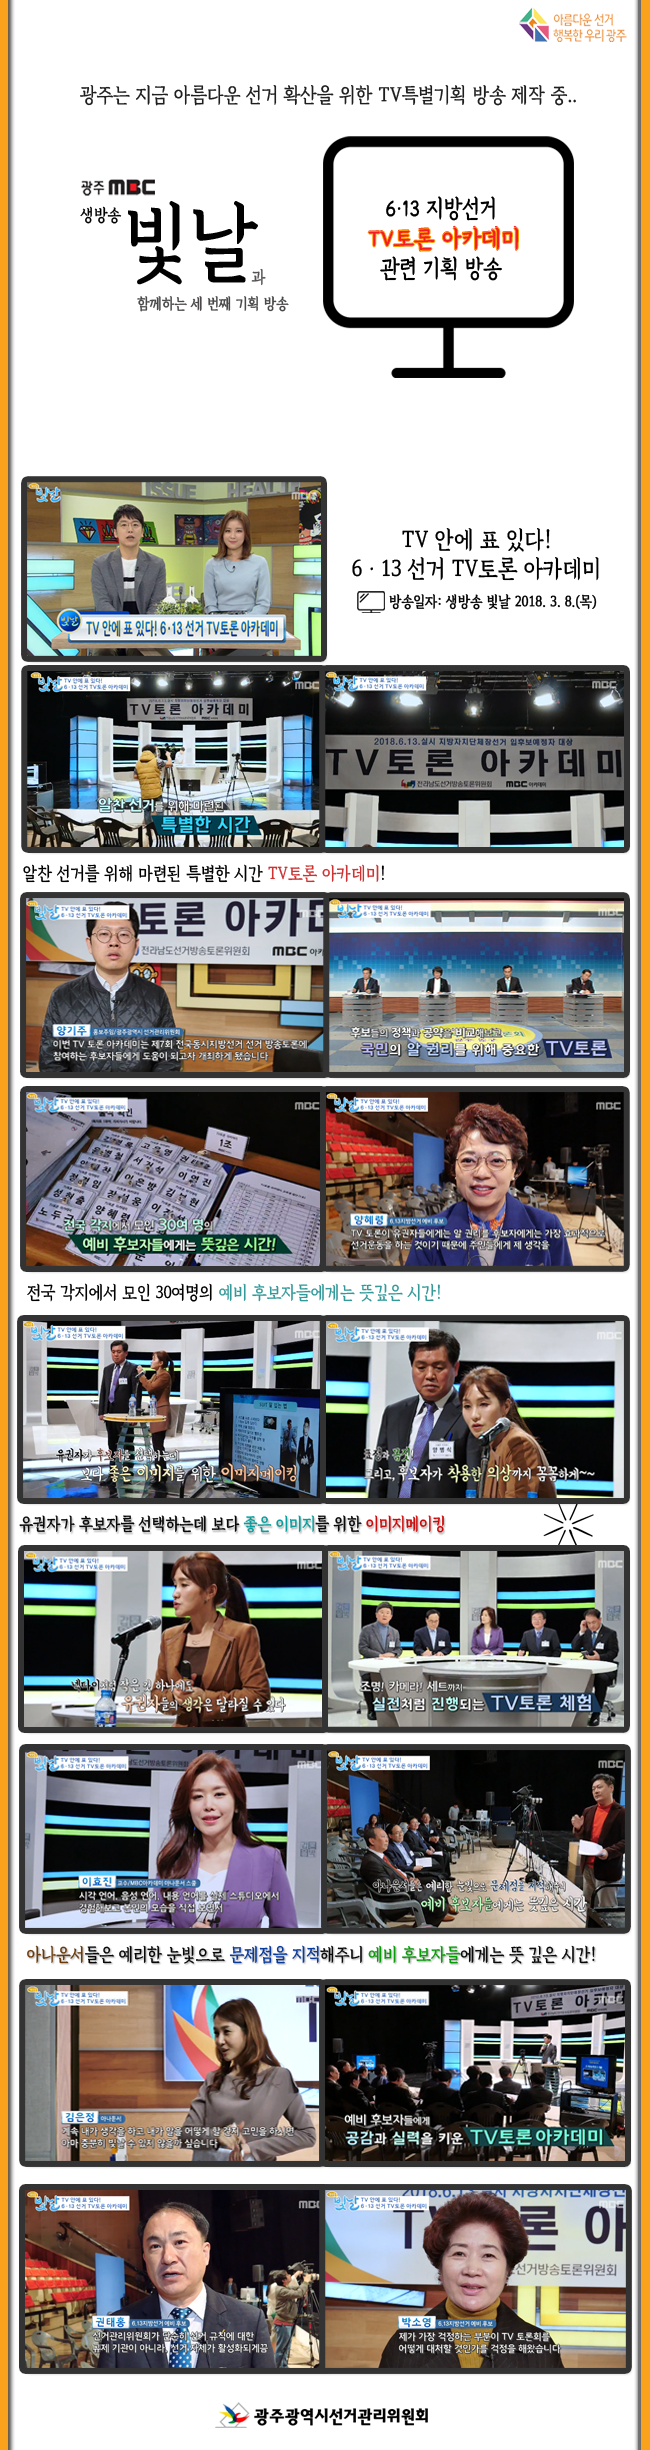 아름다운 선거 확산을 위한 TV특별기획 방송 제3탄!